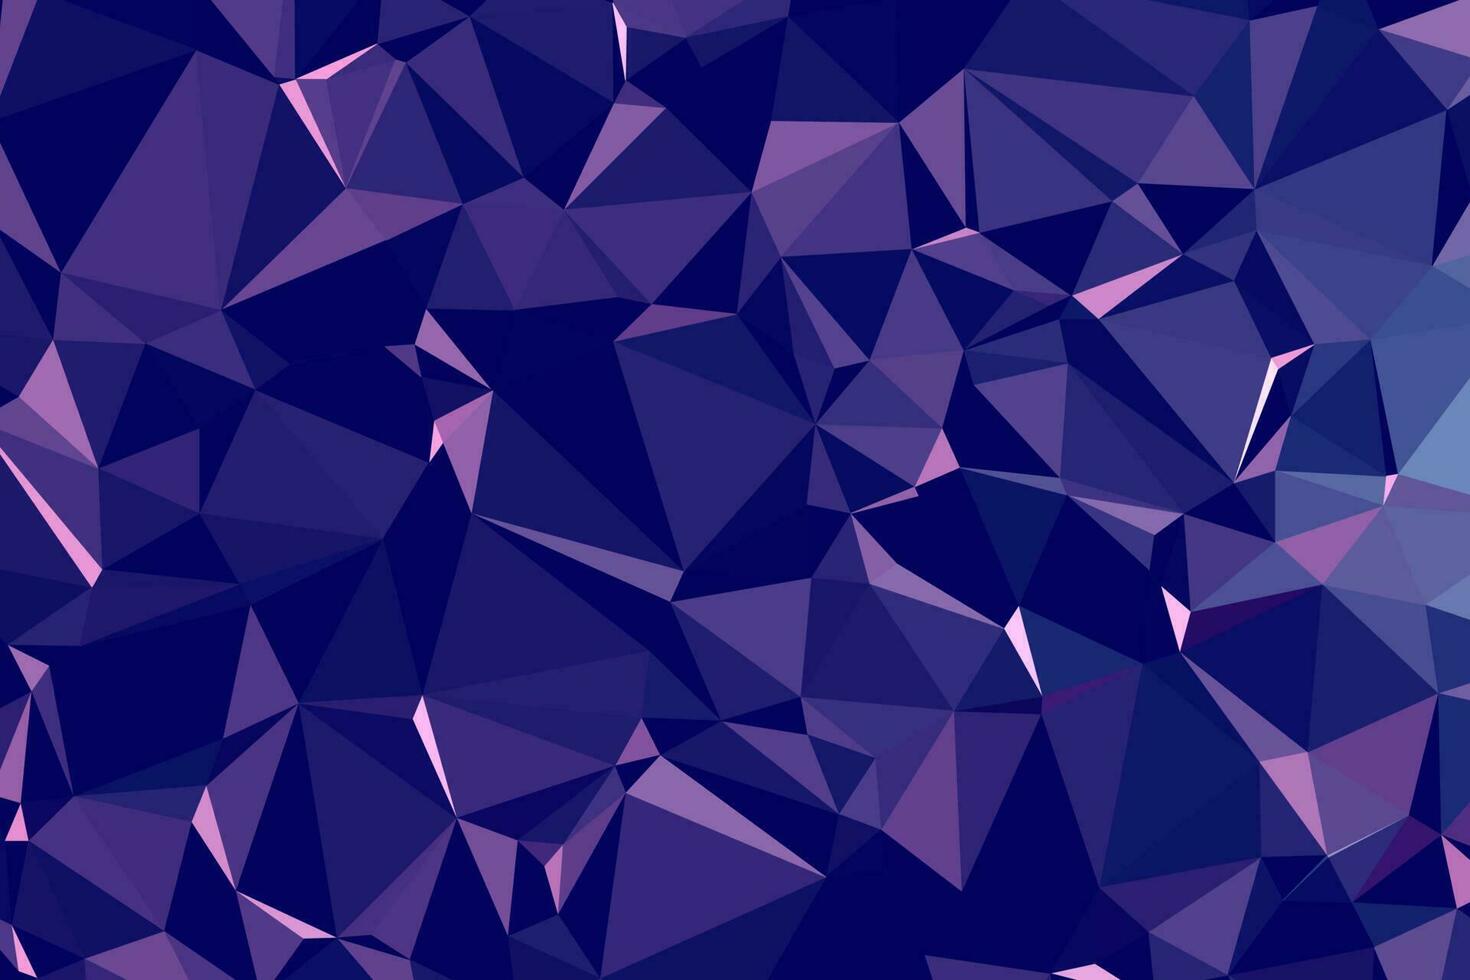 abstrakter strukturierter dunkelblauer polygonaler Hintergrund. Low-Poly-Geometrie bestehend aus Dreiecken unterschiedlicher Größe und Farbe. verwendung in design cover, präsentation, visitenkarte oder website. vektor